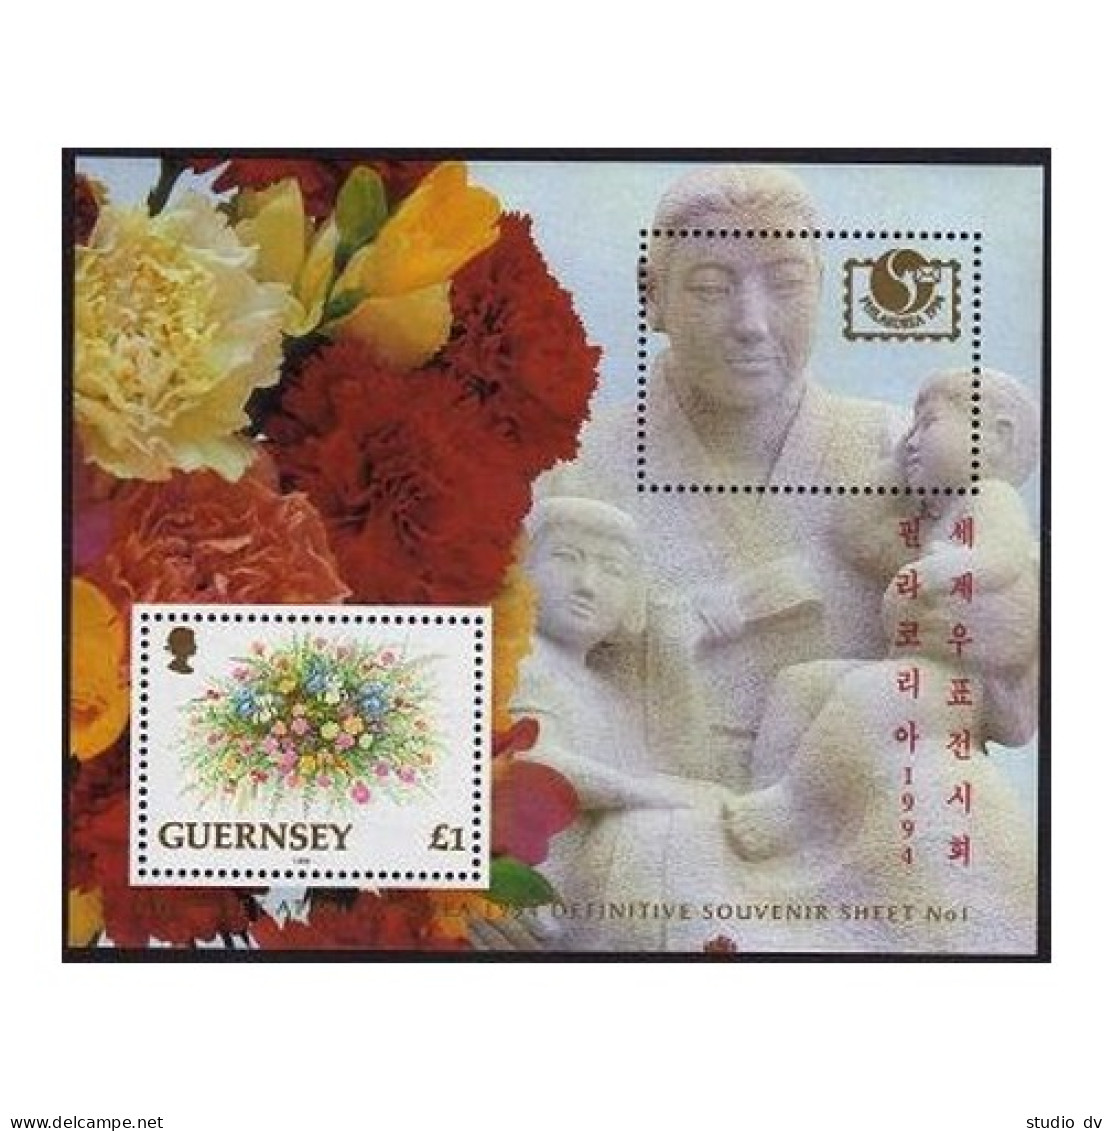 Guernsey 495a,495b, MNH. Michel Bl.12,15. PHILAKOREA, SINGAPORE-1995. Flowers. - Guernsey